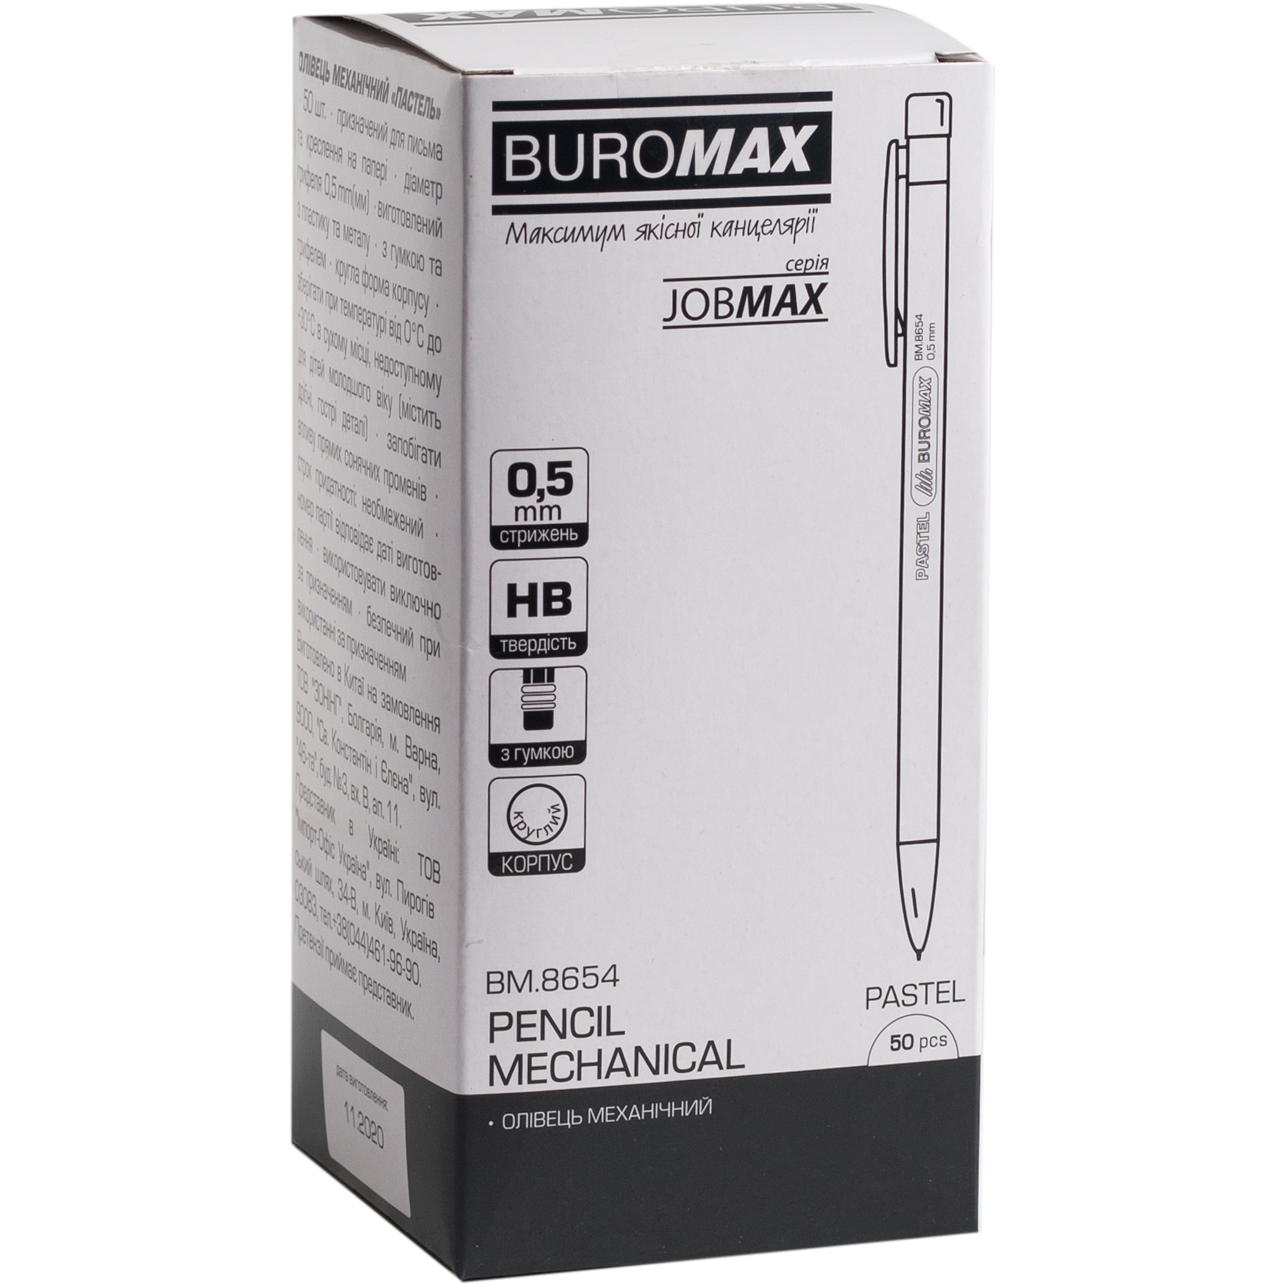 Карандаш механический Buromax Jobmax 0.5 мм зефирный (BM.8654-43) - фото 2